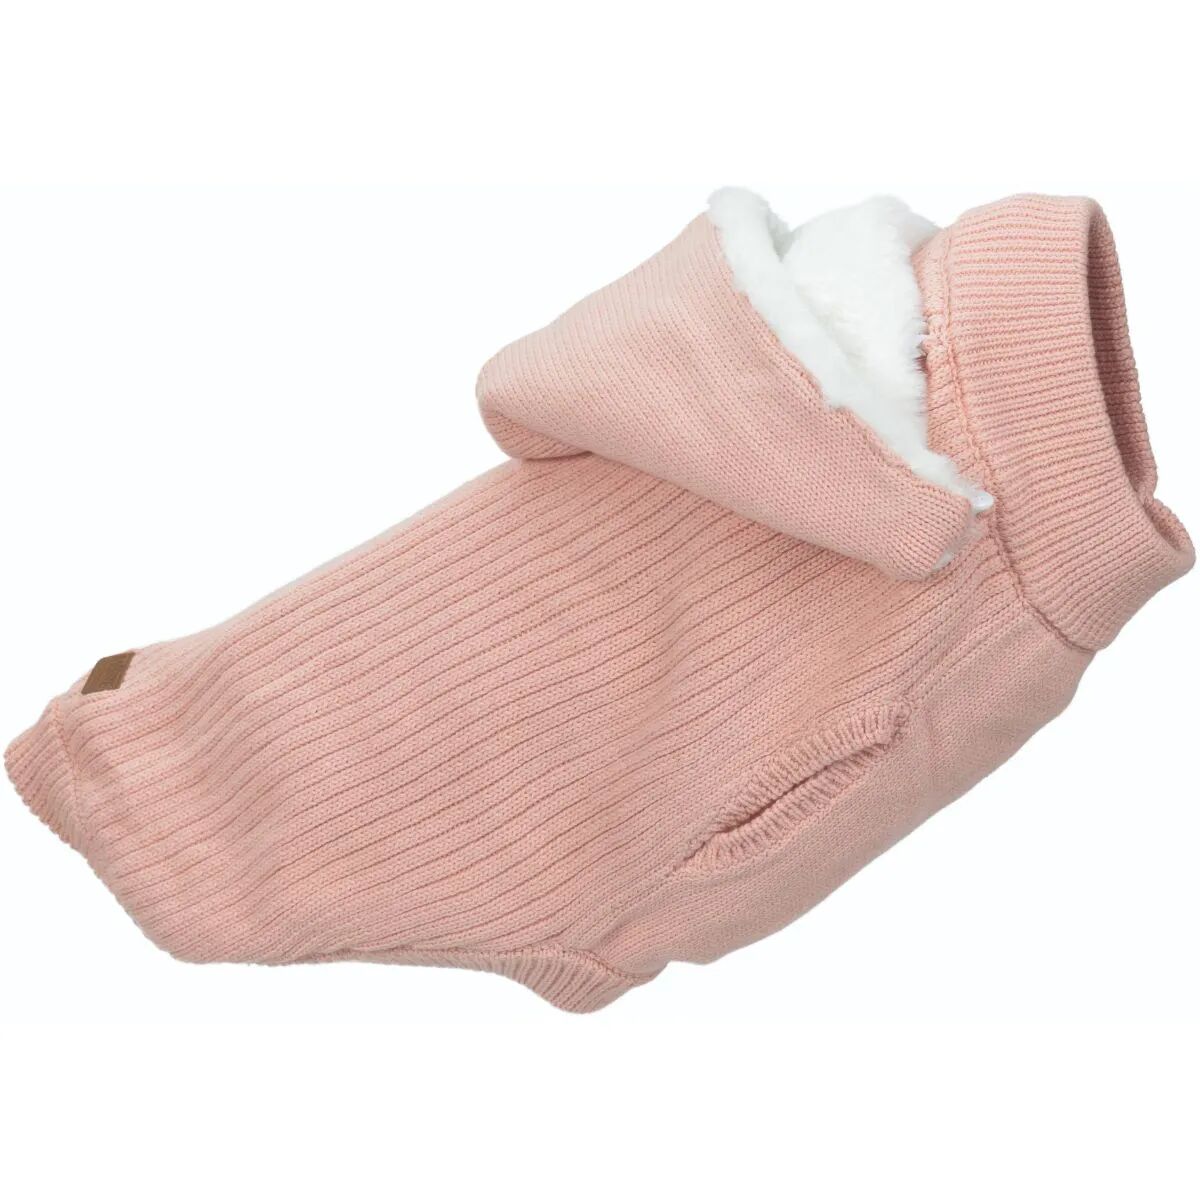 more maglione melange rosa xl